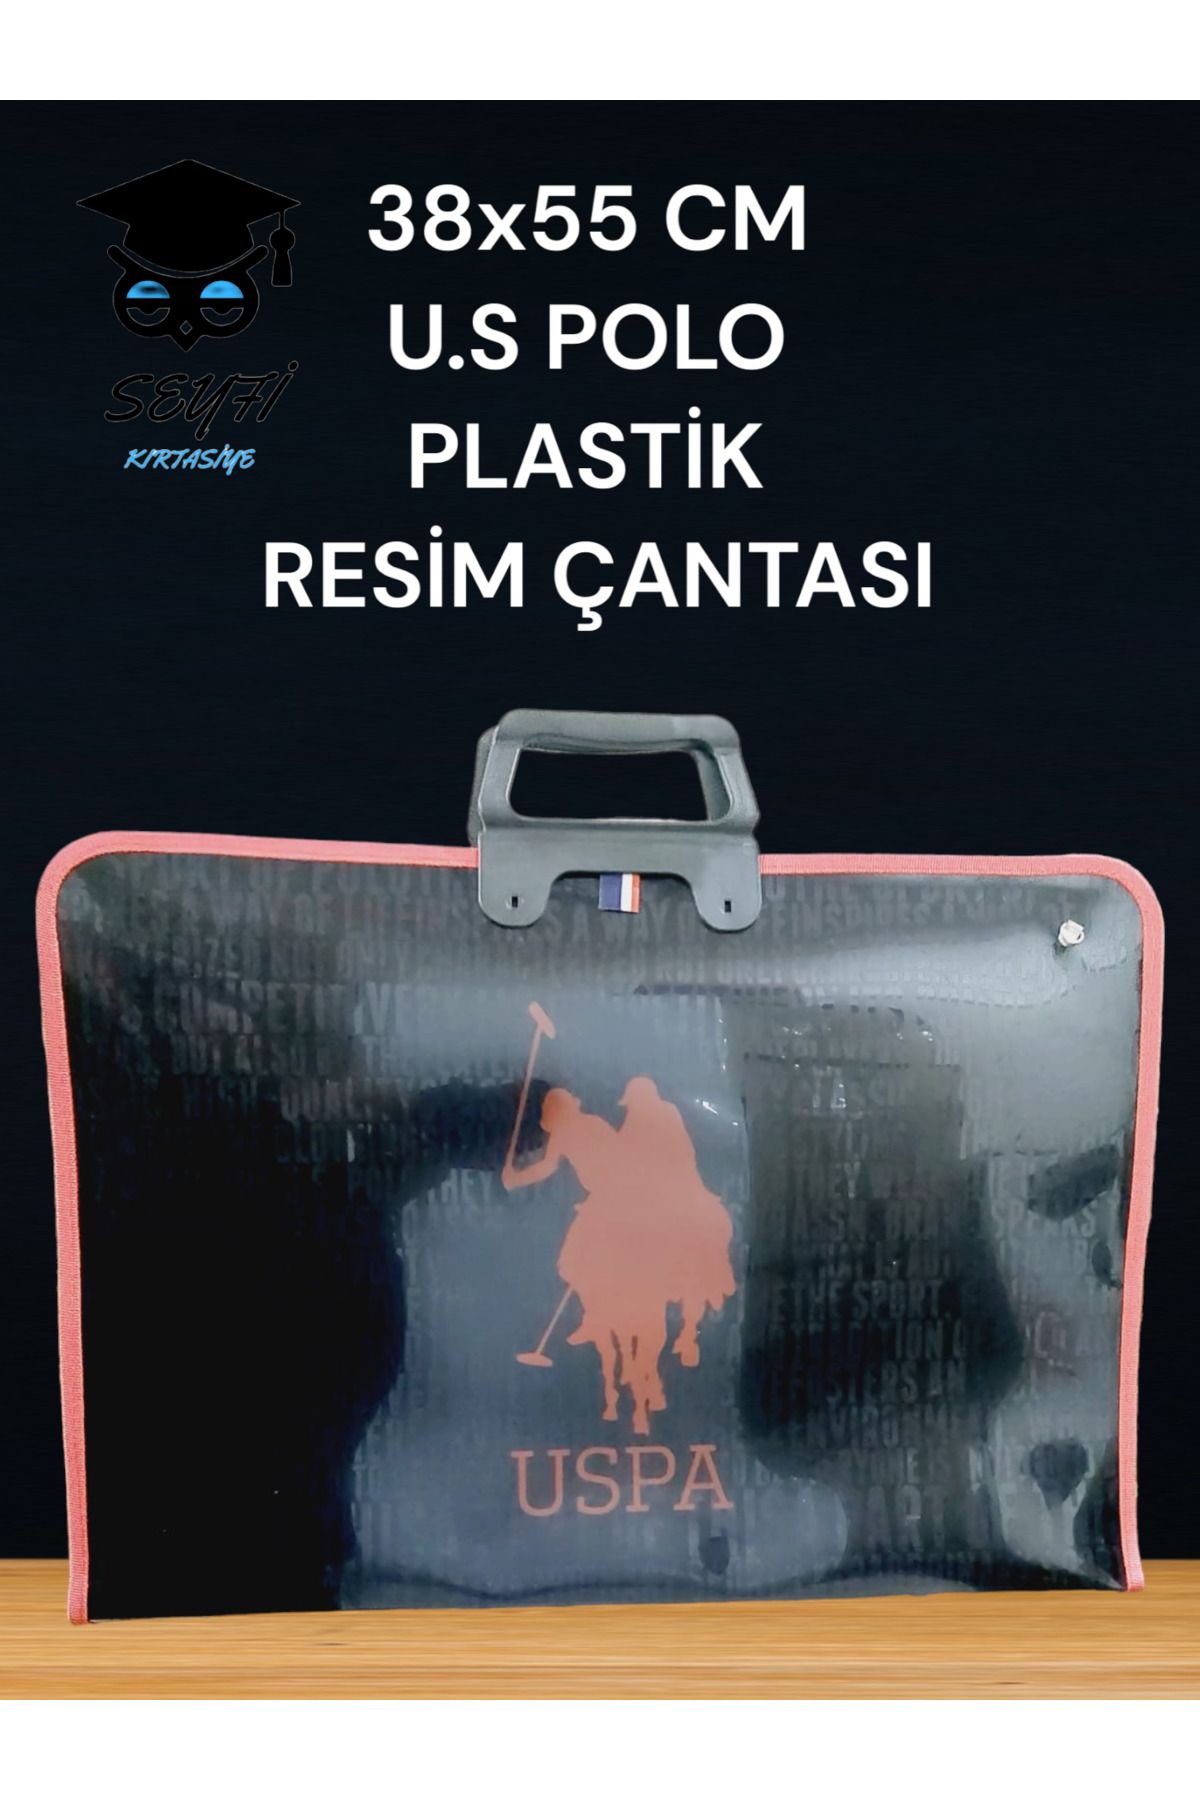 U.S. Polo Assn. 38x55 CM RESİM-PROJE-ÇİZİM ÇANTASI PLASTİK U.S POLO ASSN  ÜRÜN